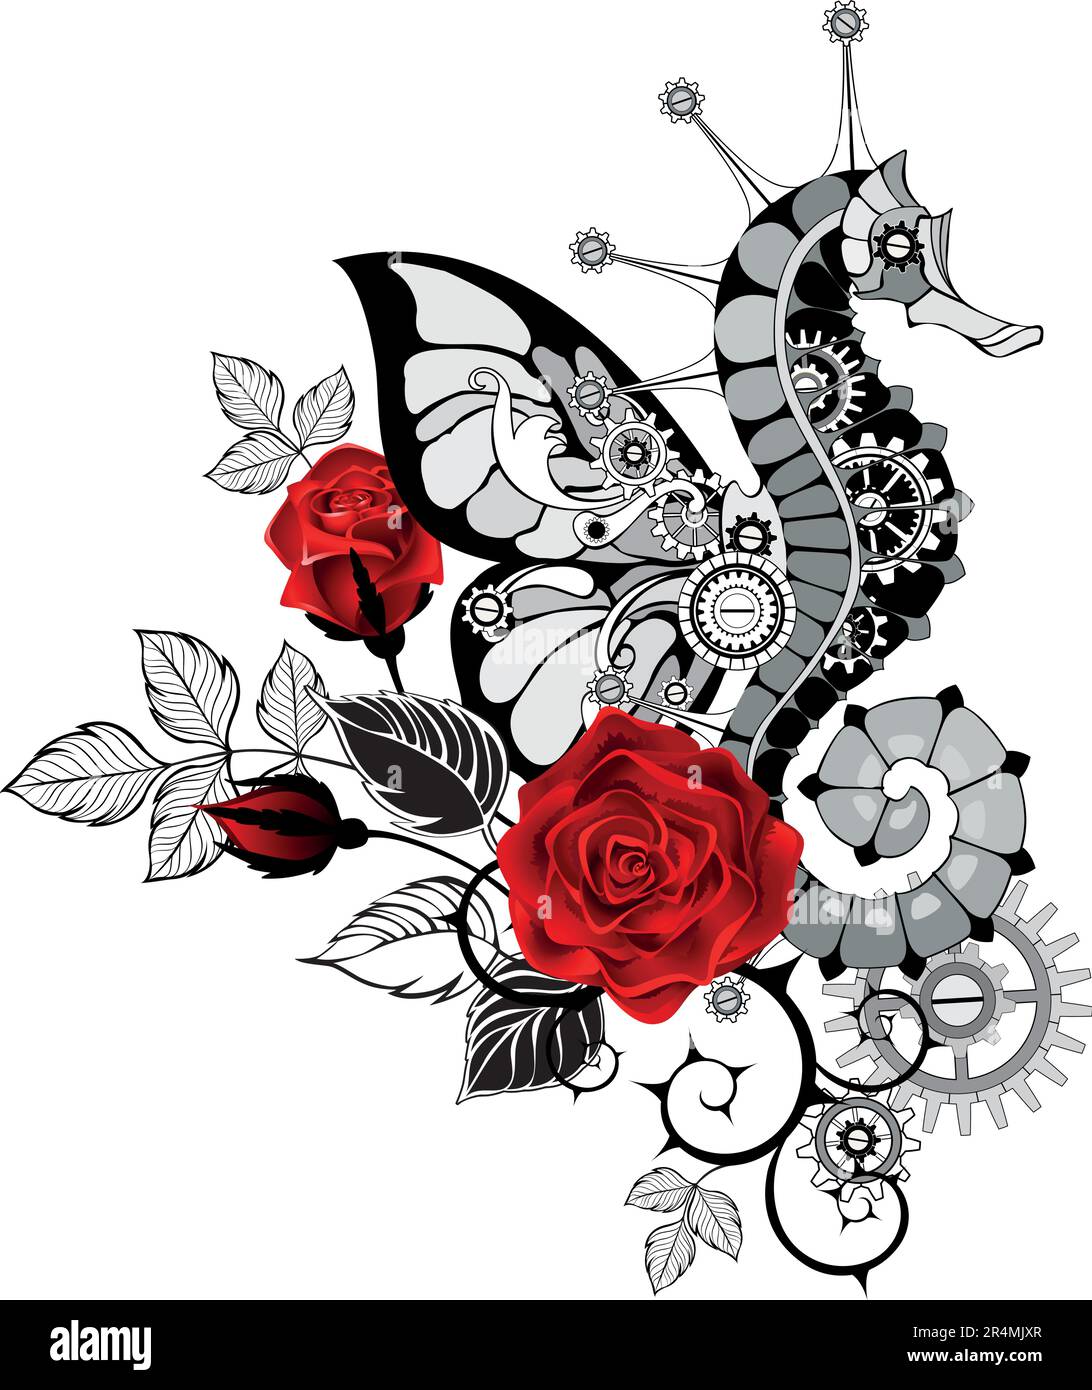 Steampunk composizione di un cavalluccio marino meccanico con ala a farfalla, disegnato artisticamente, decorato con gambi neri e rose rosse fiorenti o Illustrazione Vettoriale